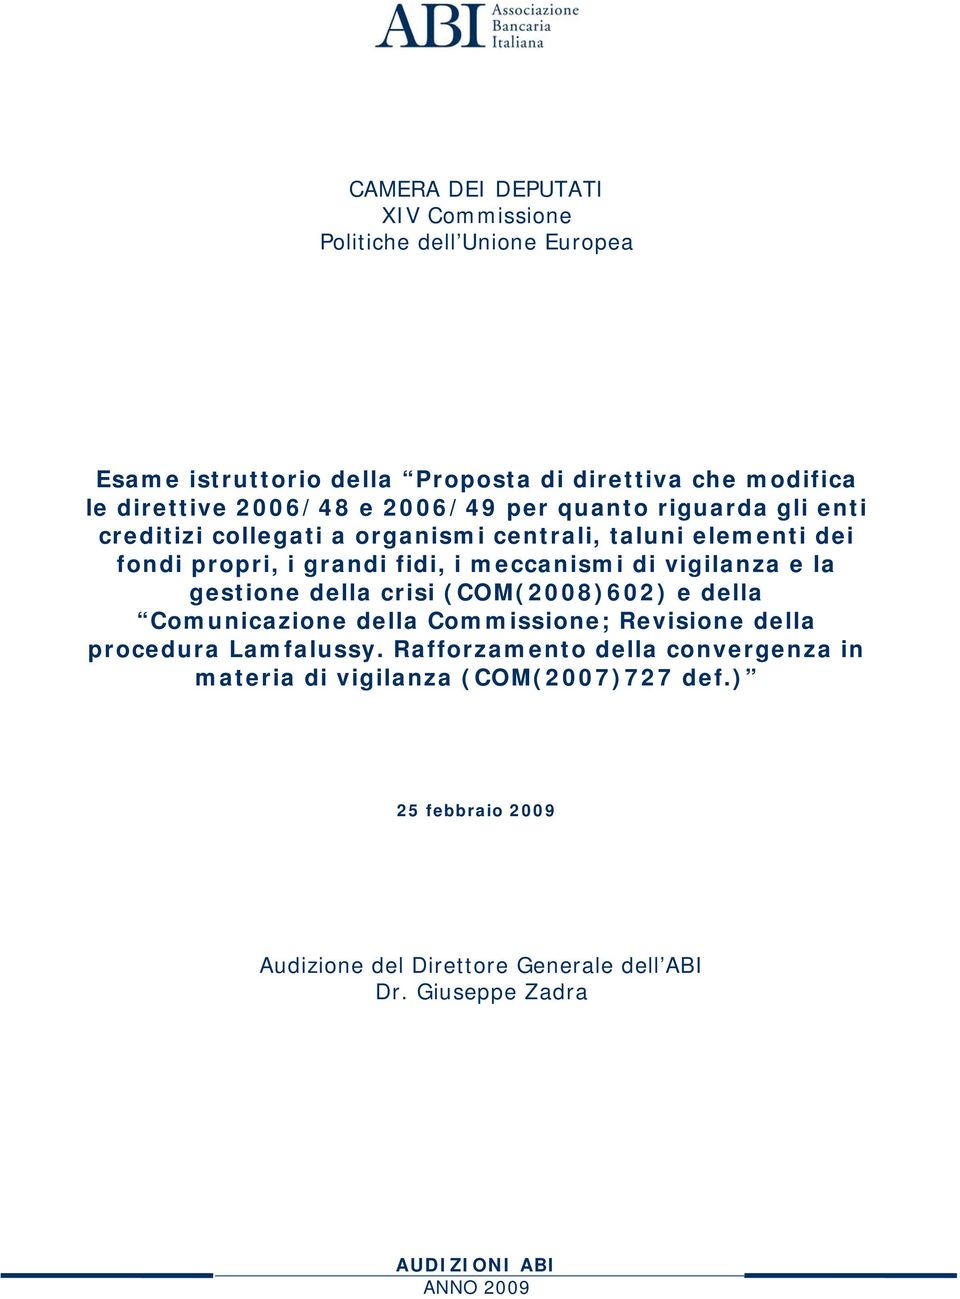 meccanismi di vigilanza e la gestione della crisi (COM(2008)602) e della Comunicazione della Commissione; Revisione della procedura Lamfalussy.